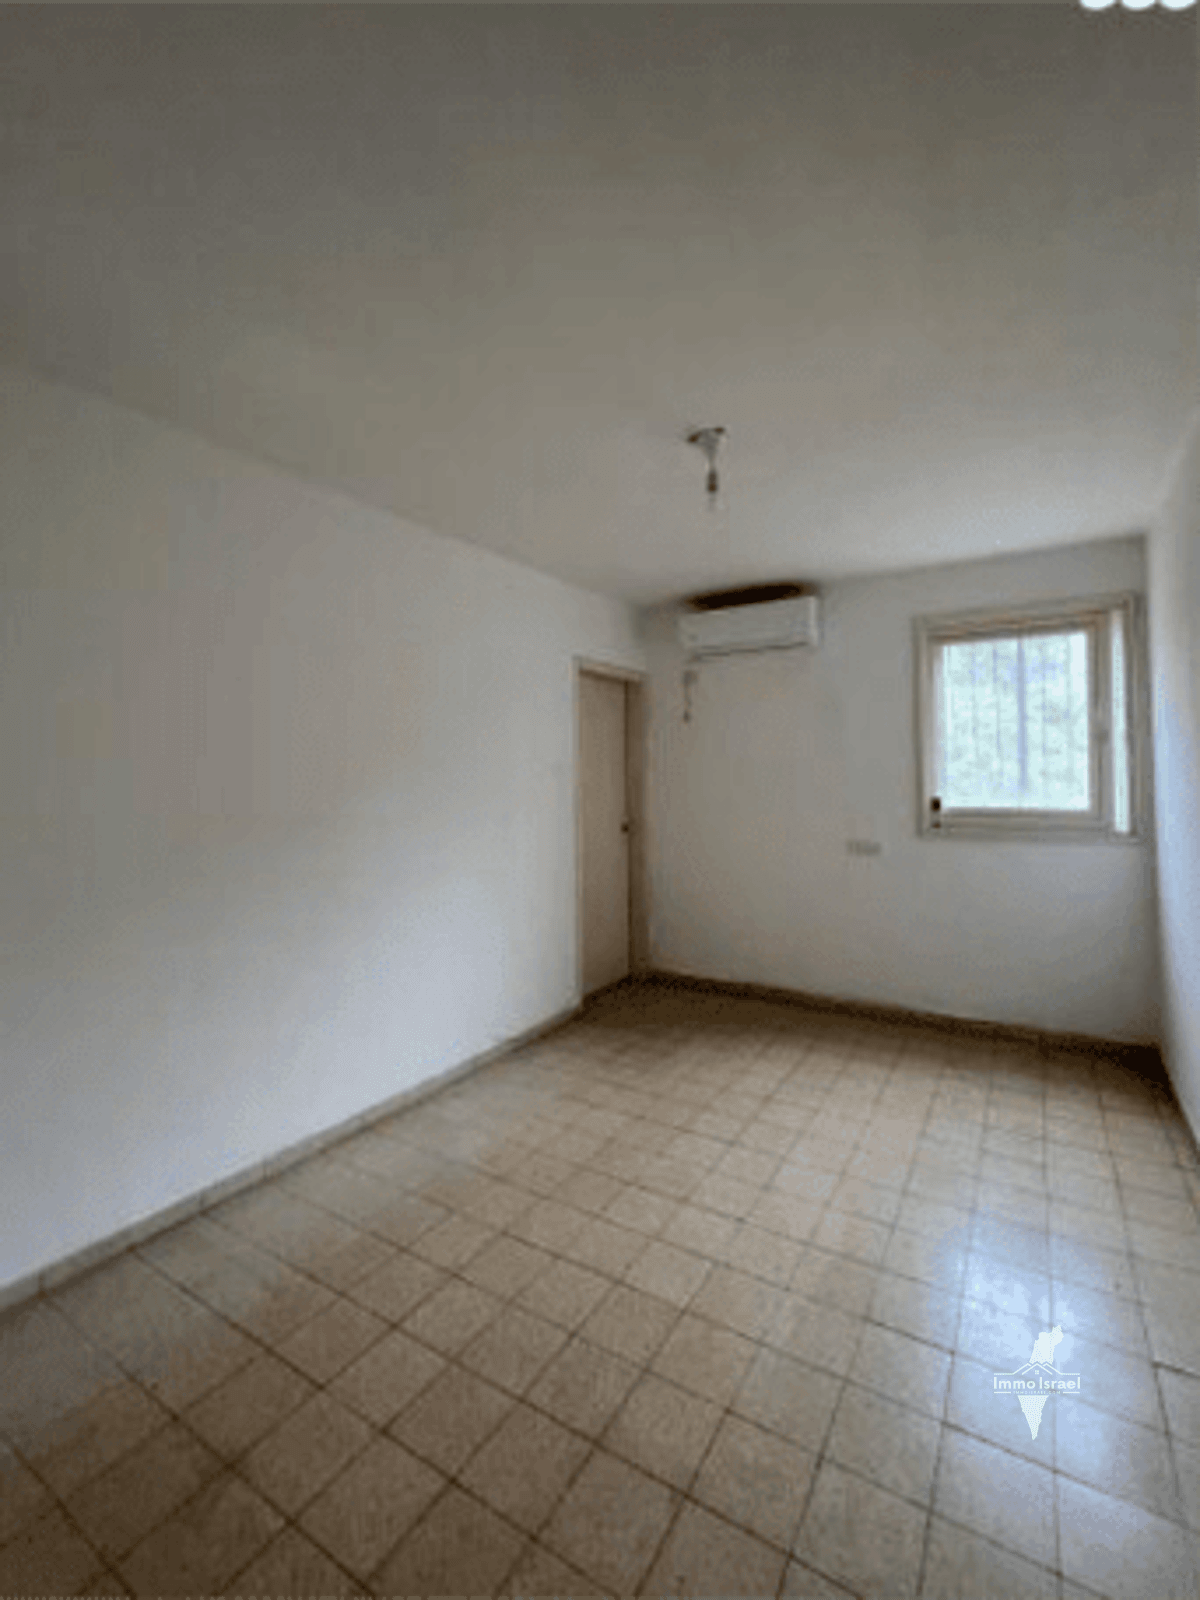 For Sale: 3.5-Room Apartment on Weizman Street, Petah Tikva